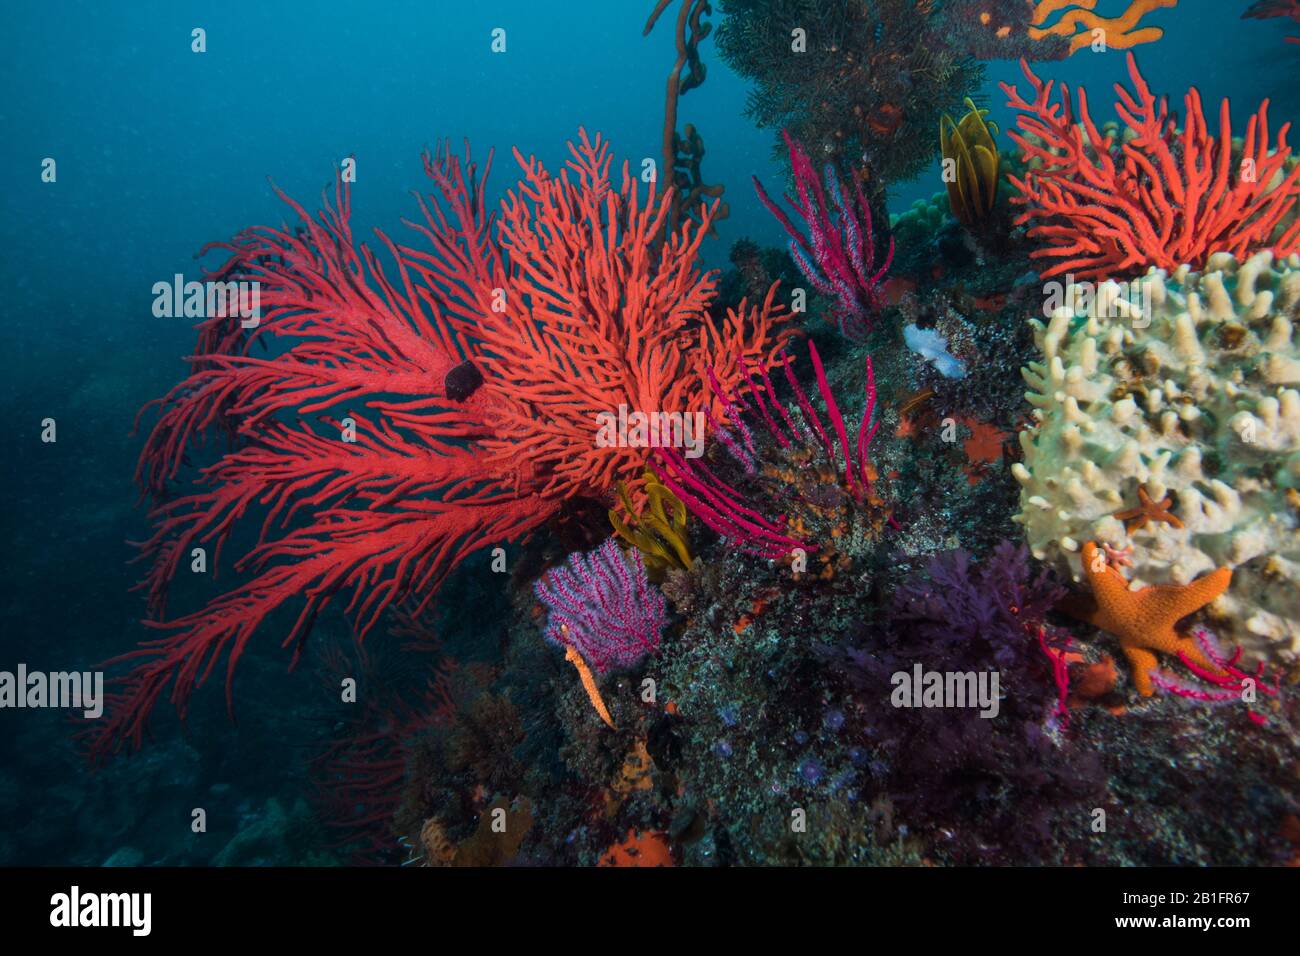 Fanático de Palmate rojo (Leptogoria palma) que crece en el arrecife rodeado de otras especies marinas. Foto de stock